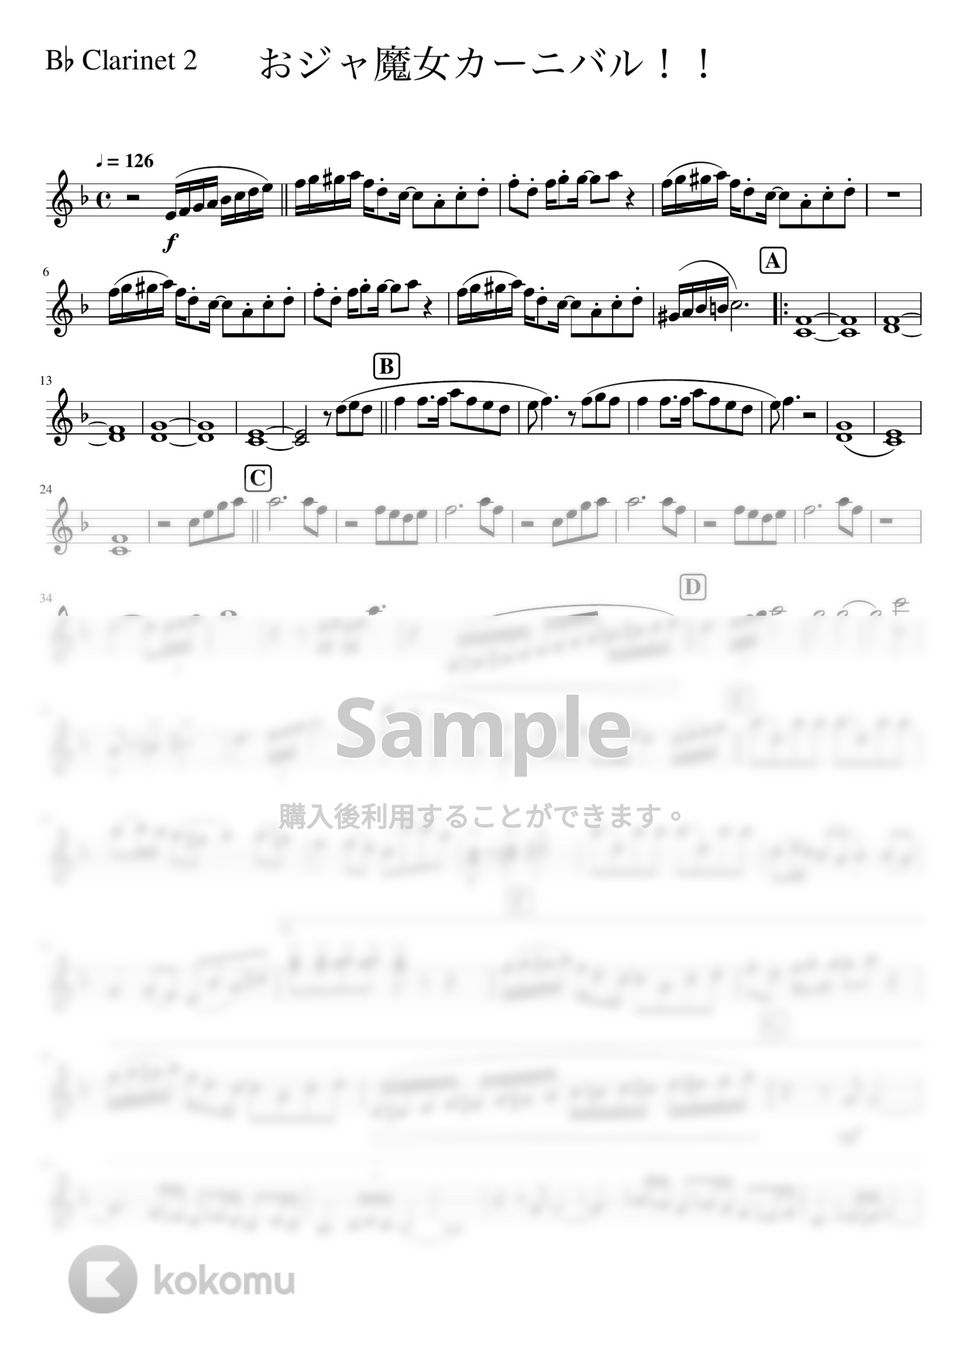 おジャ魔女どれみ - おジャ魔女カーニバル!! (吹奏楽少人数クラリネット2) by orinpia music